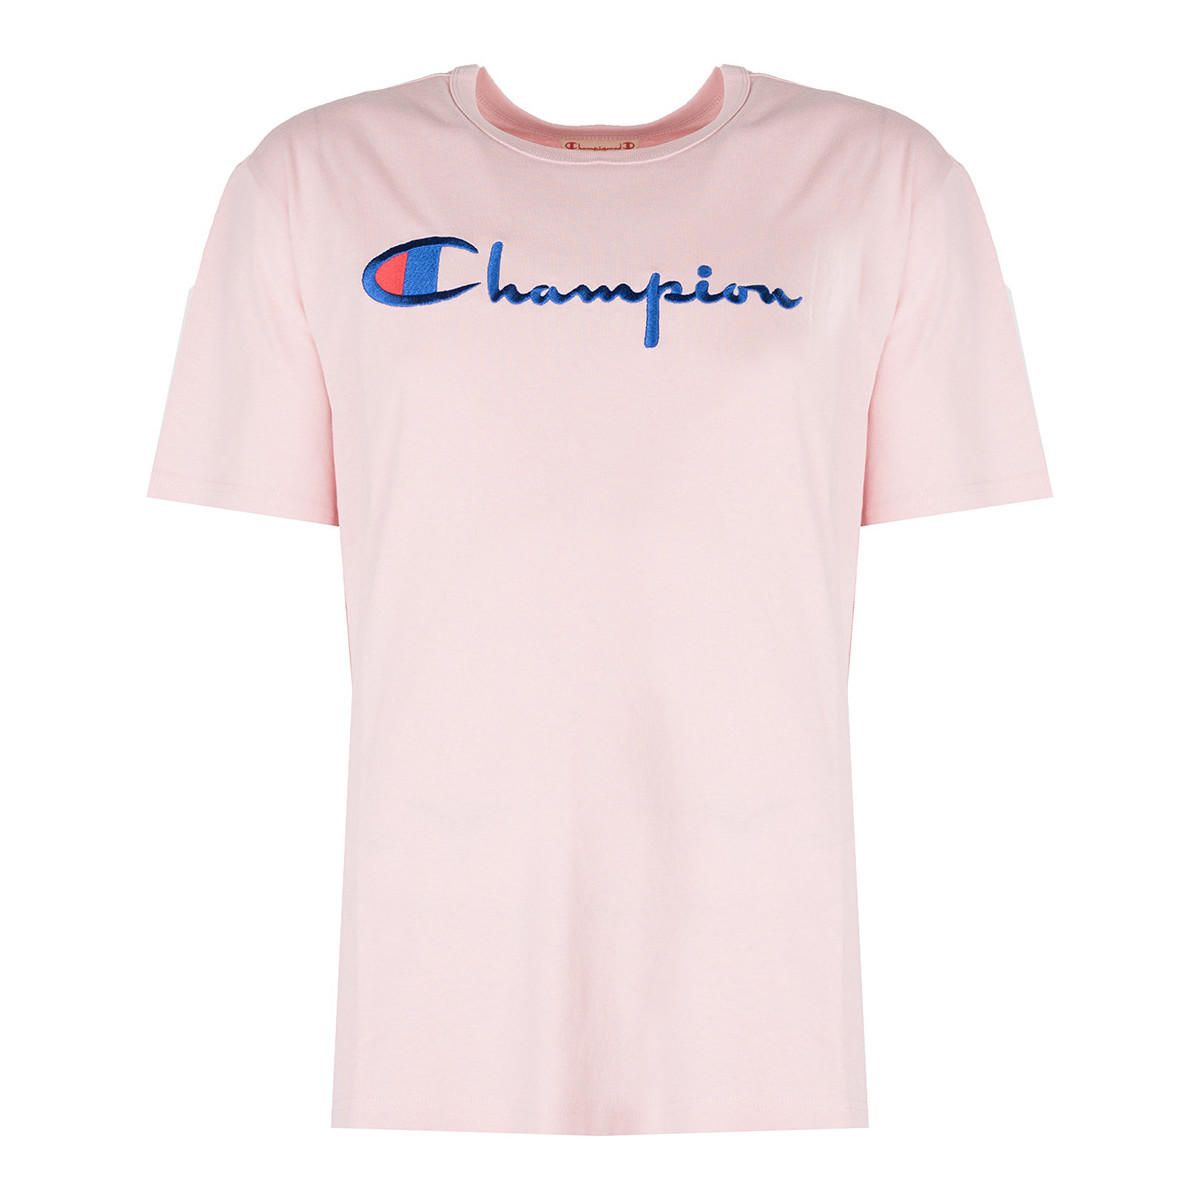 vaatteet Miehet Lyhythihainen t-paita Champion 210972 Vaaleanpunainen